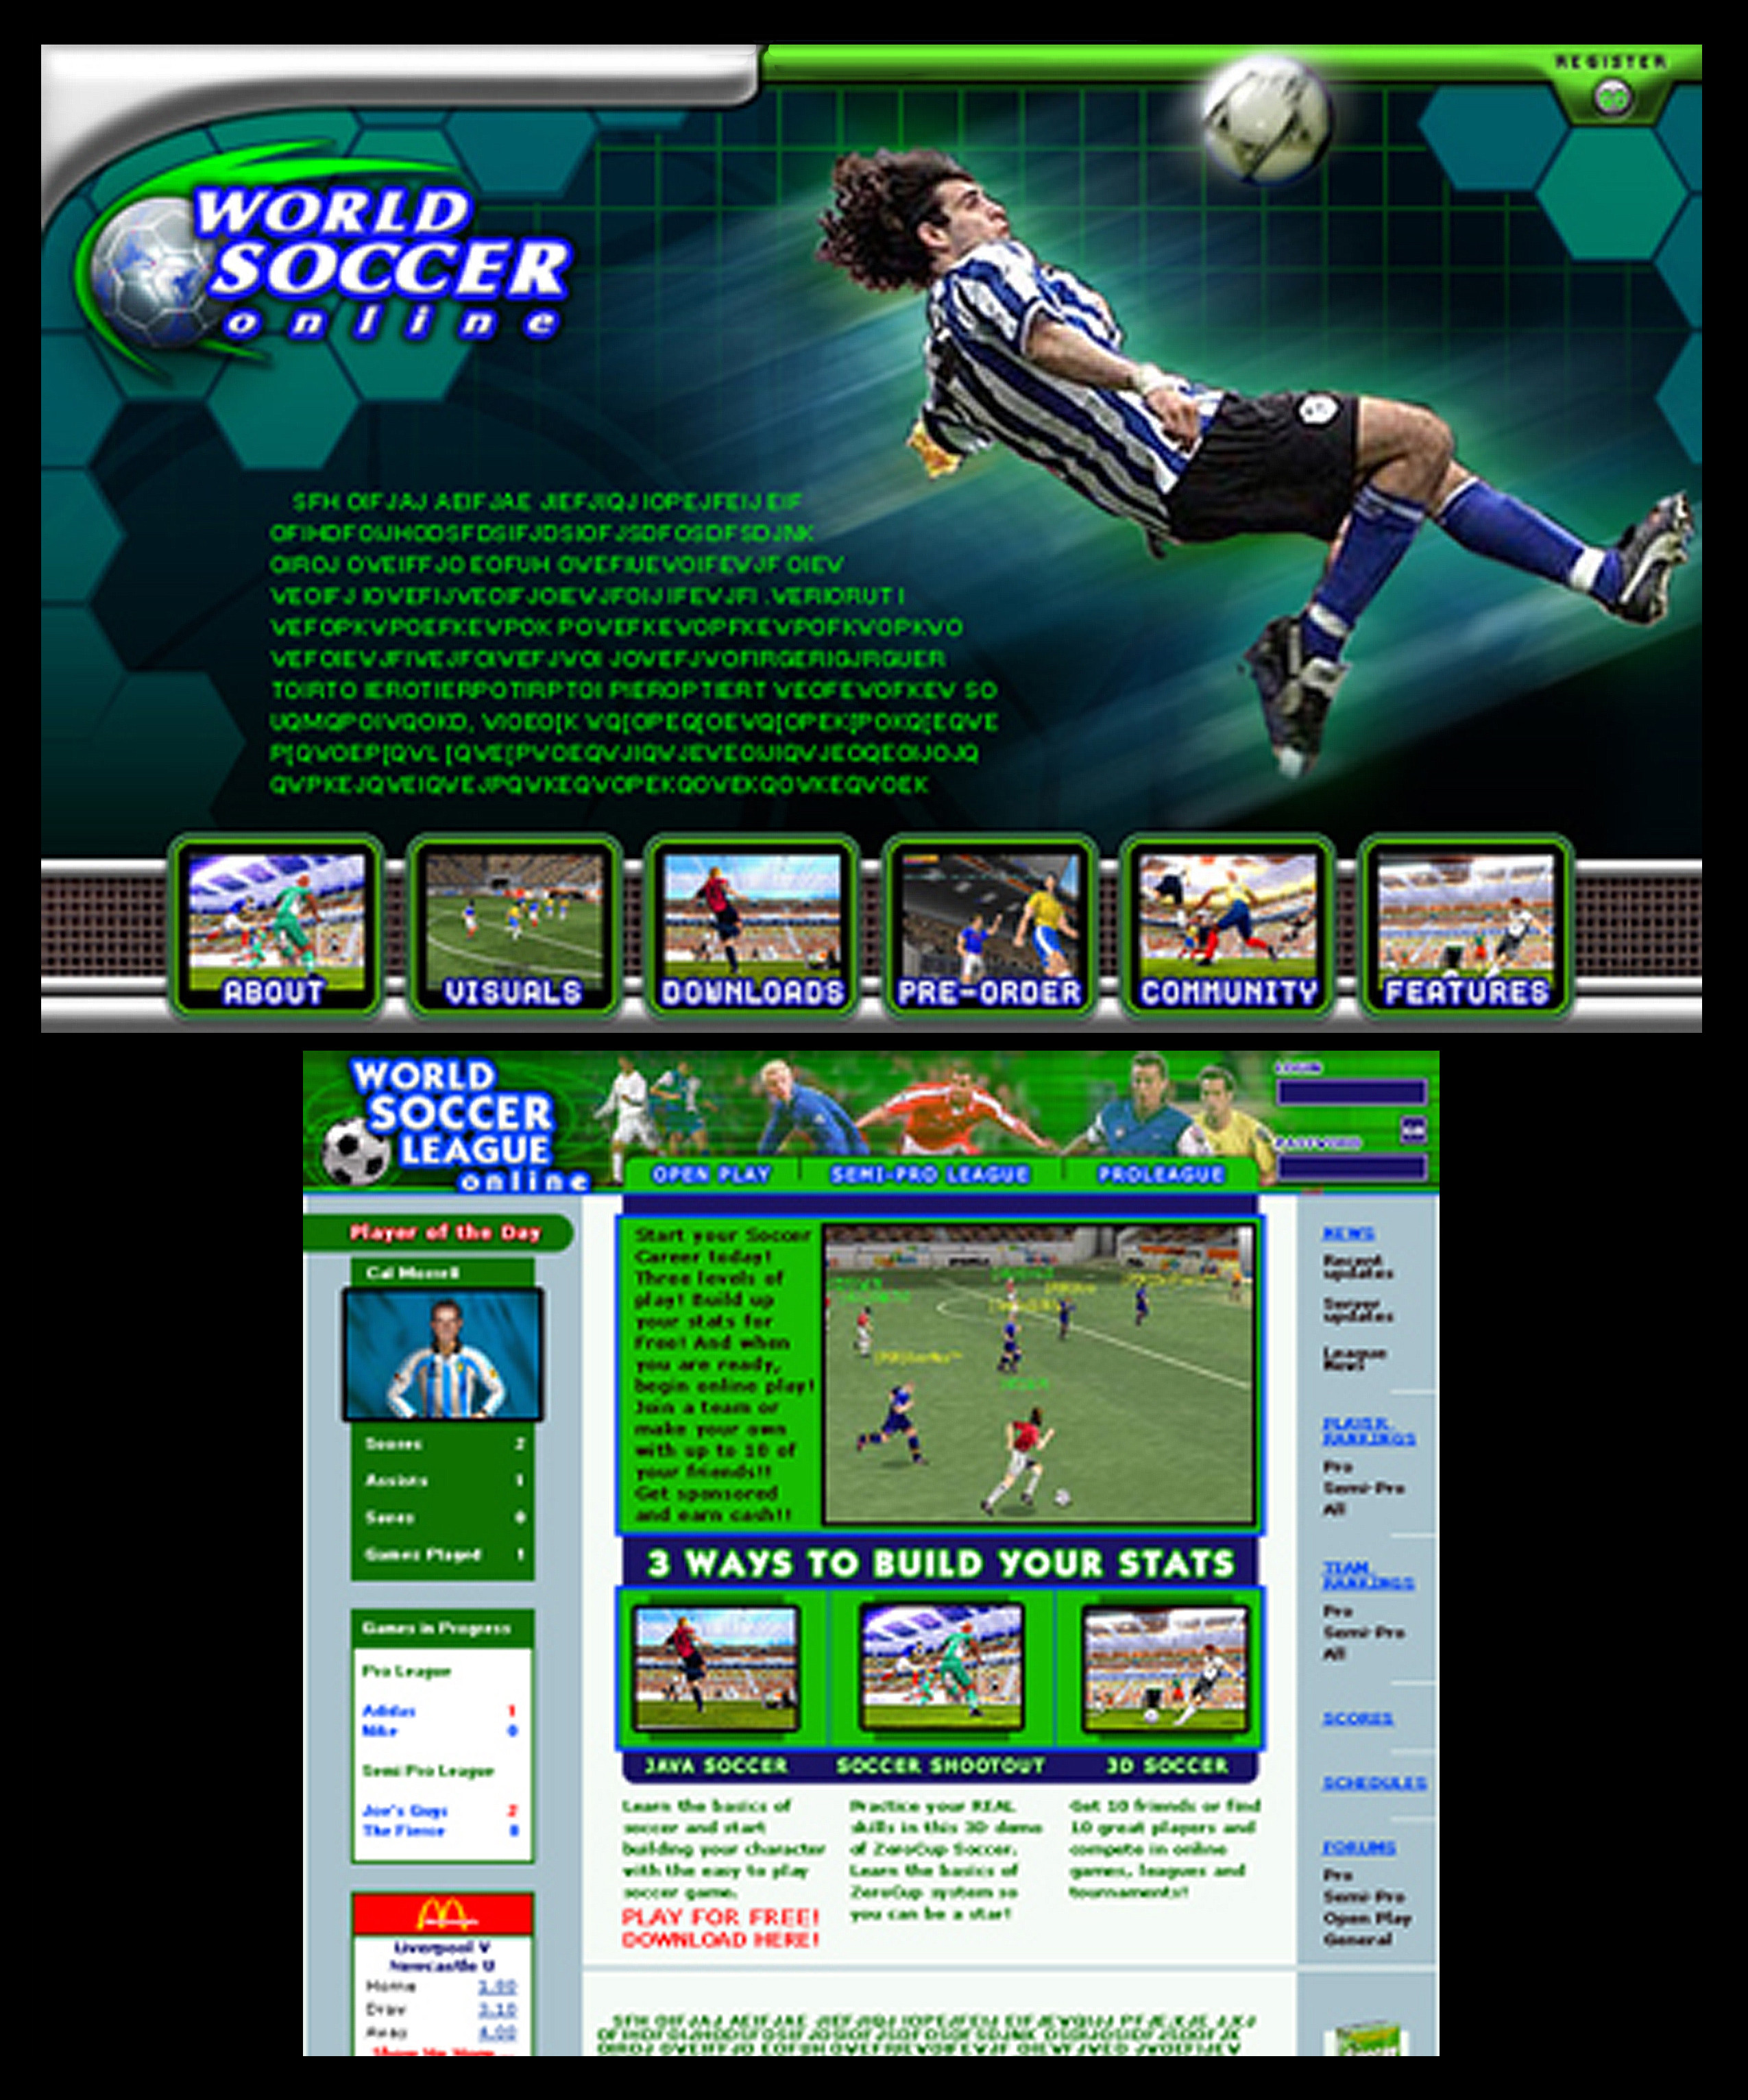 World Soccer online.com